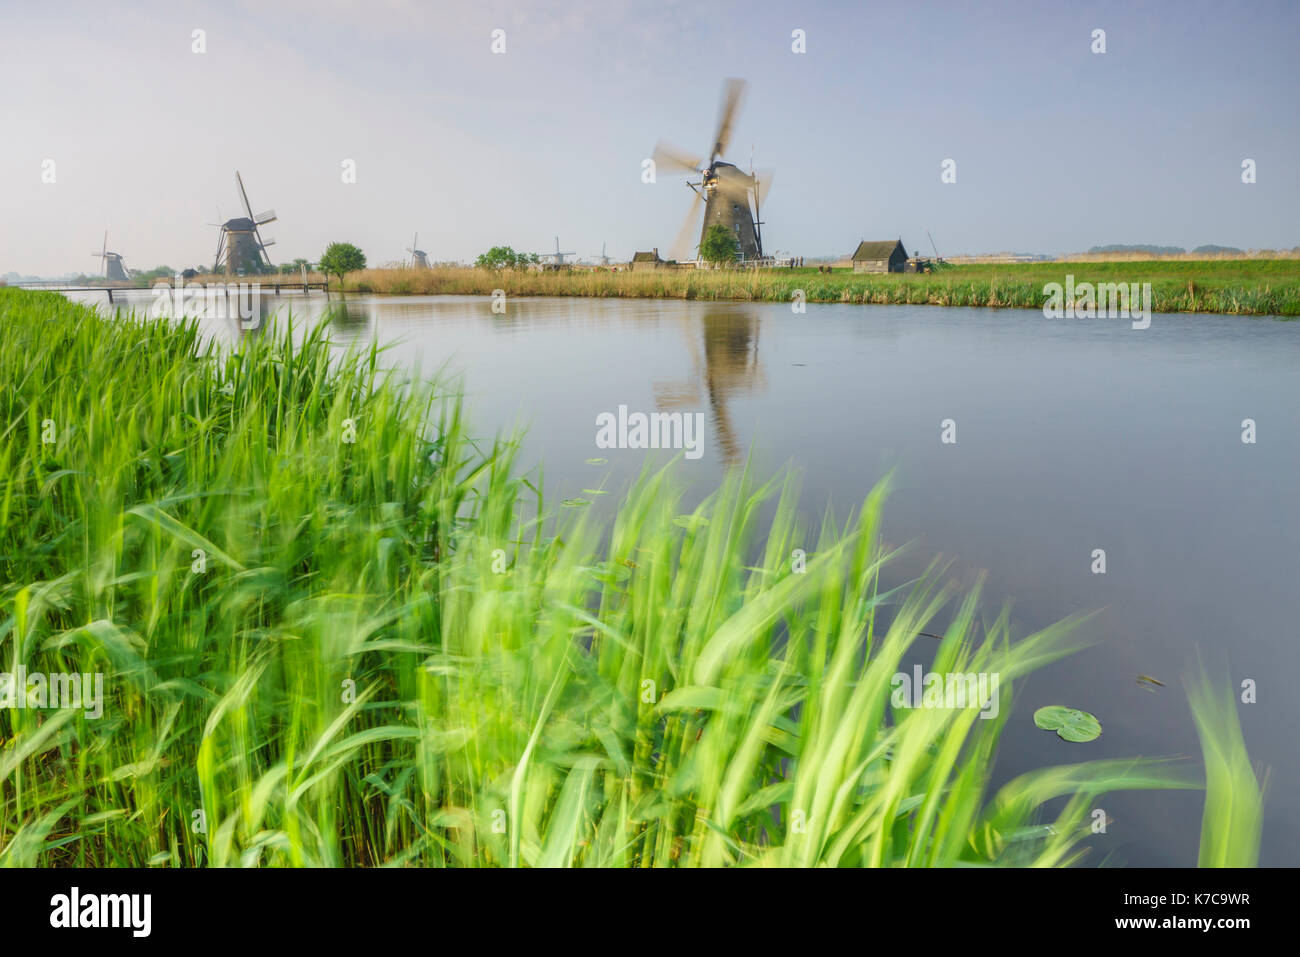 Les moulins à vent les trames de l'herbe verte reflétée dans le canal kinderdijk rotterdam Pays-Bas Hollande du Sud Europe Banque D'Images